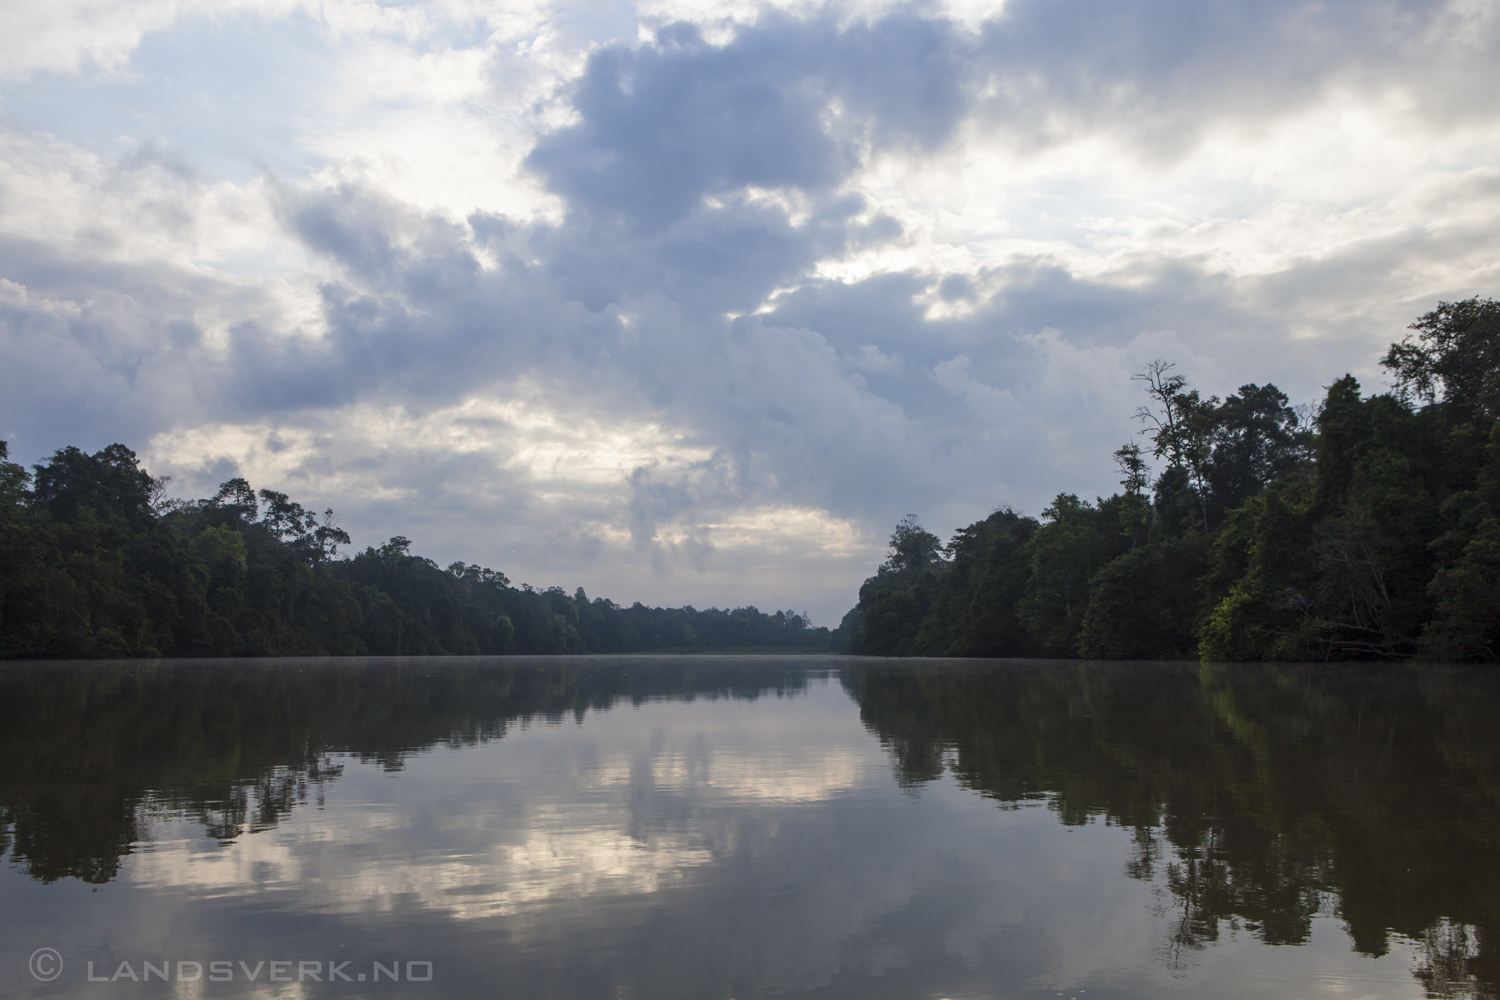 The Sukau rainforest. Sukau, Borneo.

(Canon EOS 5D Mark II / Canon EF 24-70mm f/2.8 L USM)